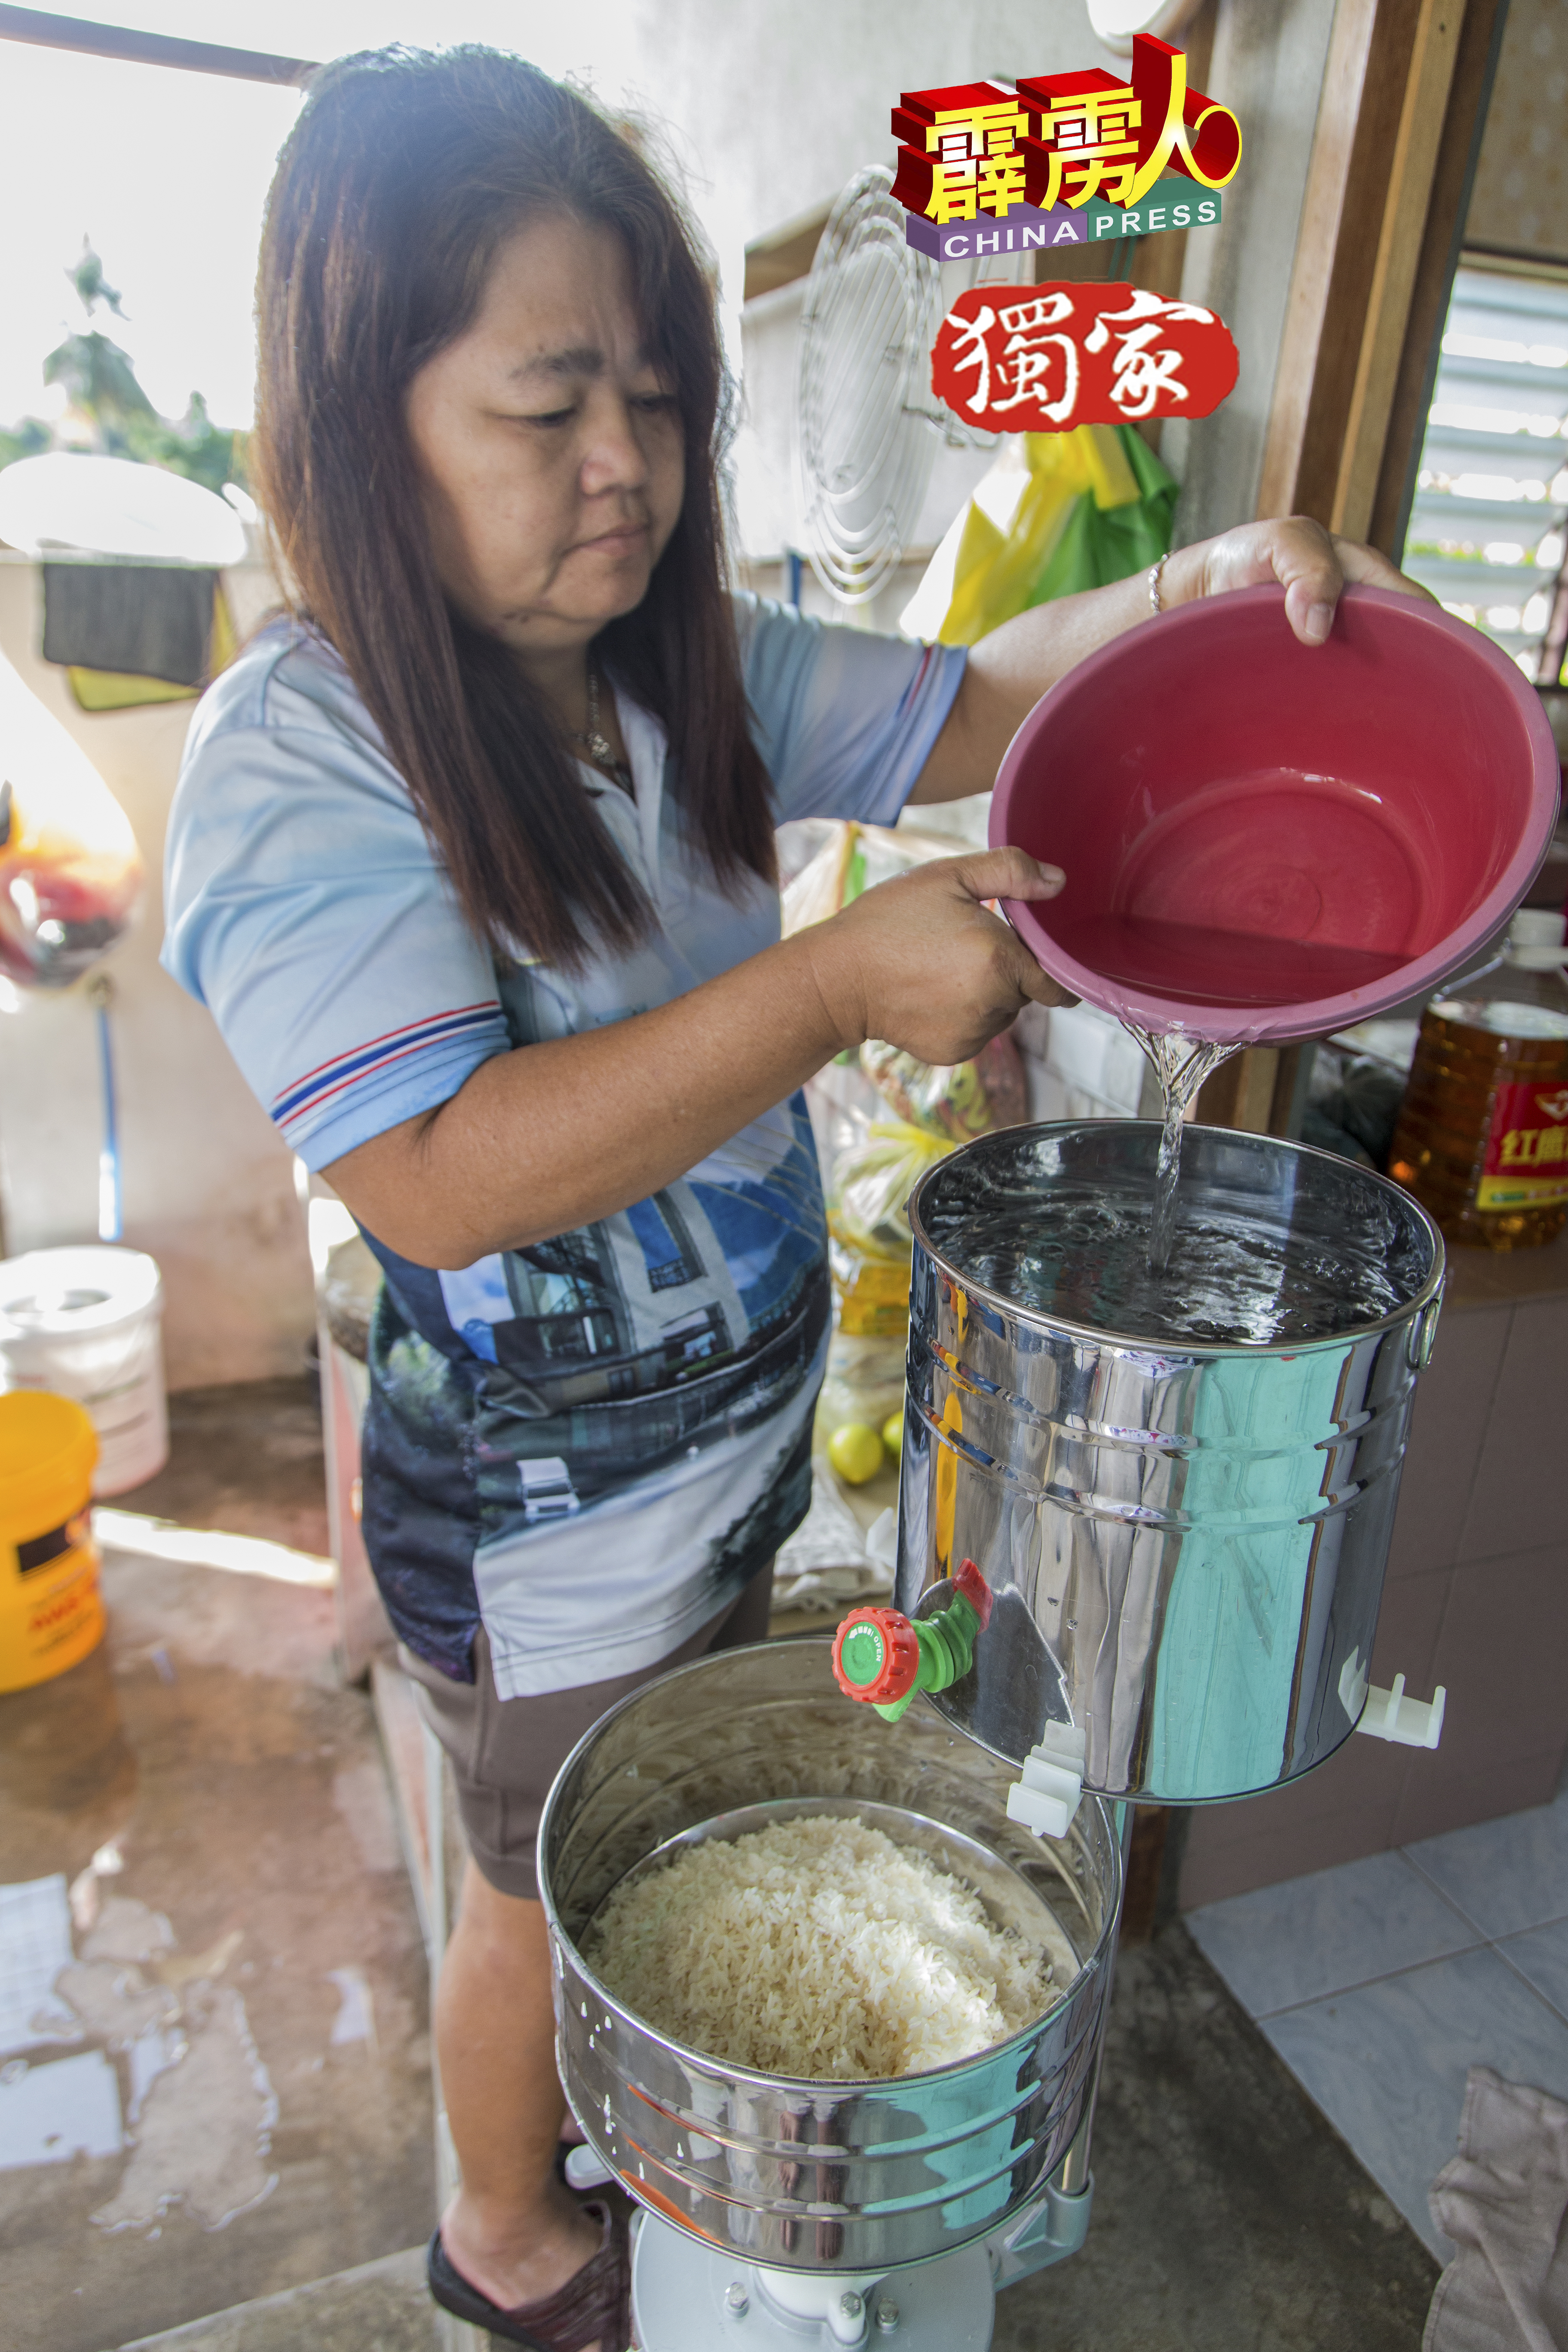 刘银妹先把糯米放入磨米机，再灌水准备磨米。